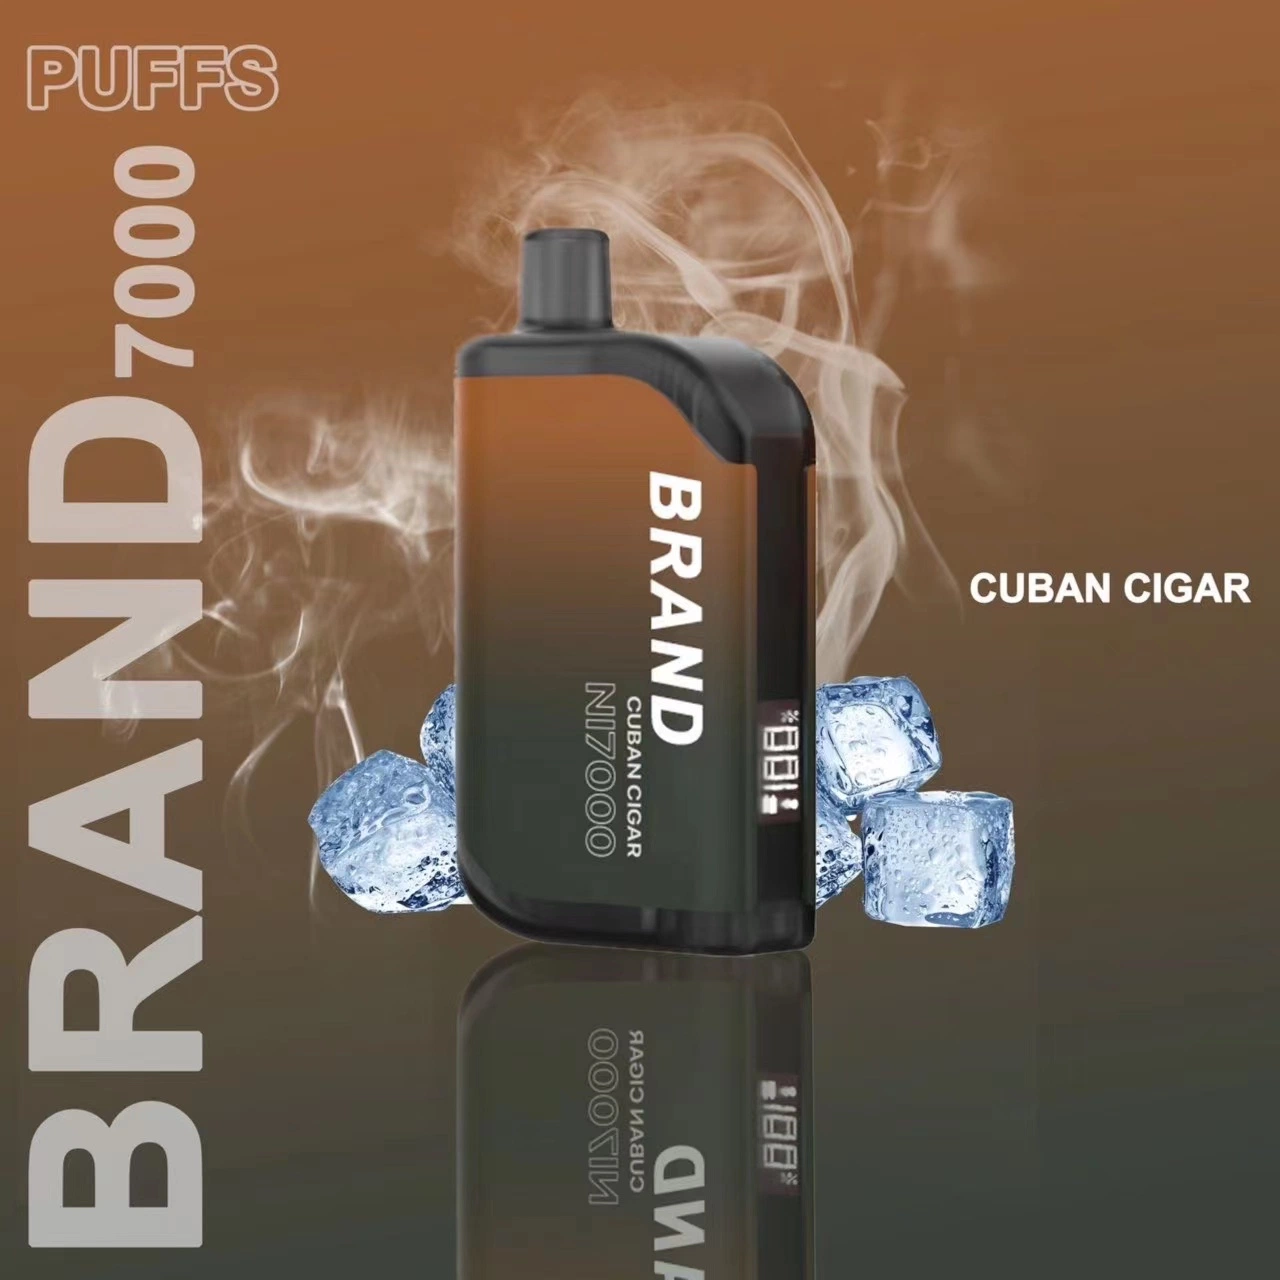 Disposable/Chargeable Electronic Cigarette Smoking Vape Supplier Vape Pen Vape Dubai Vape Middle East Shooting Vape Brand	Mini Cigarette